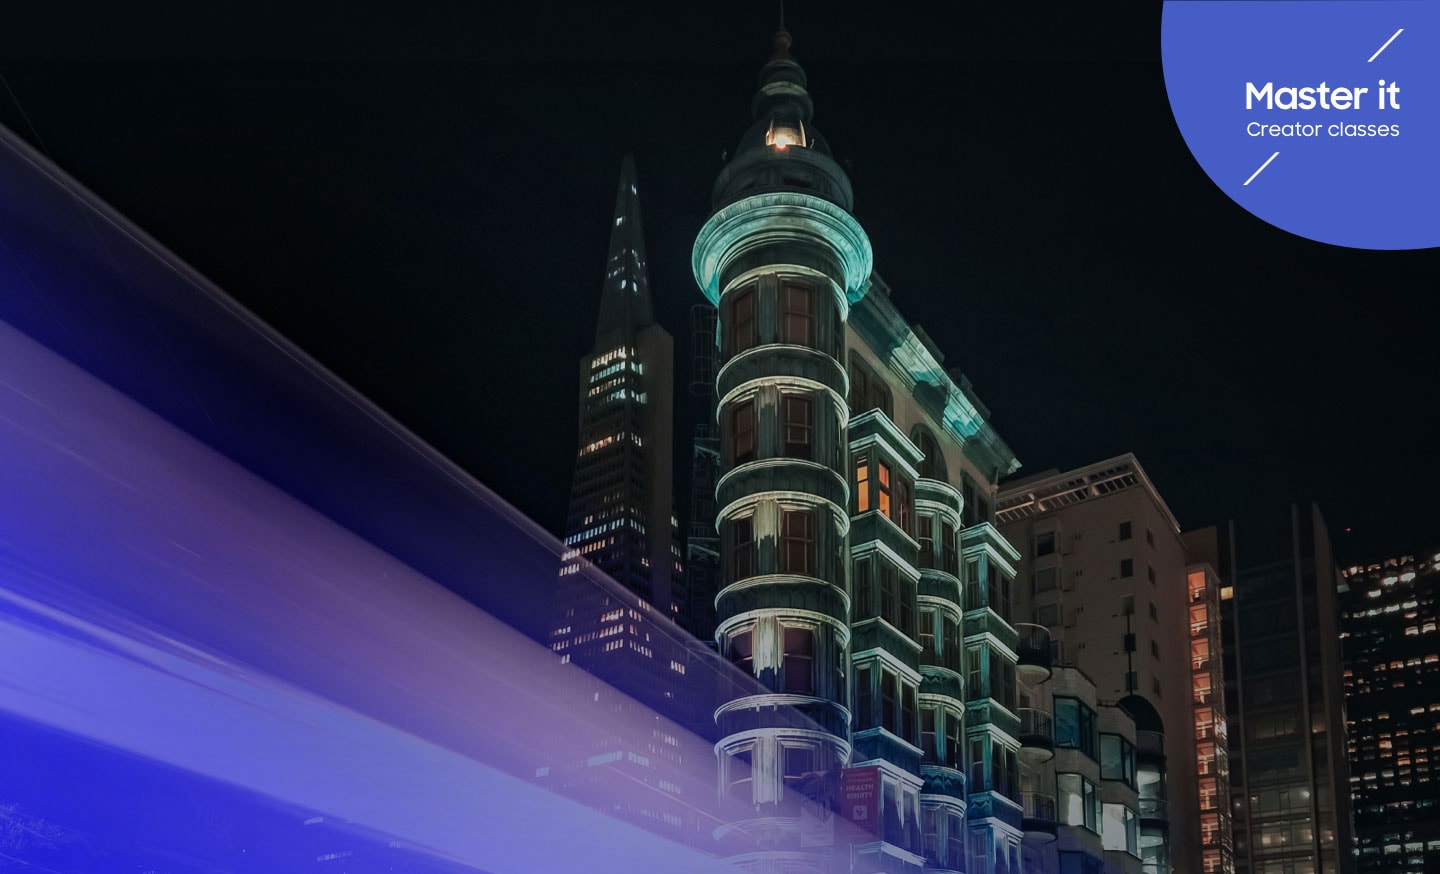 Как сделать фото с длинной выдержкой на телефон и получить потрясающие снимки ночного города. Длинная выдержка, статичный кадр и Galaxy Z Flip4, идеальные фото после заката